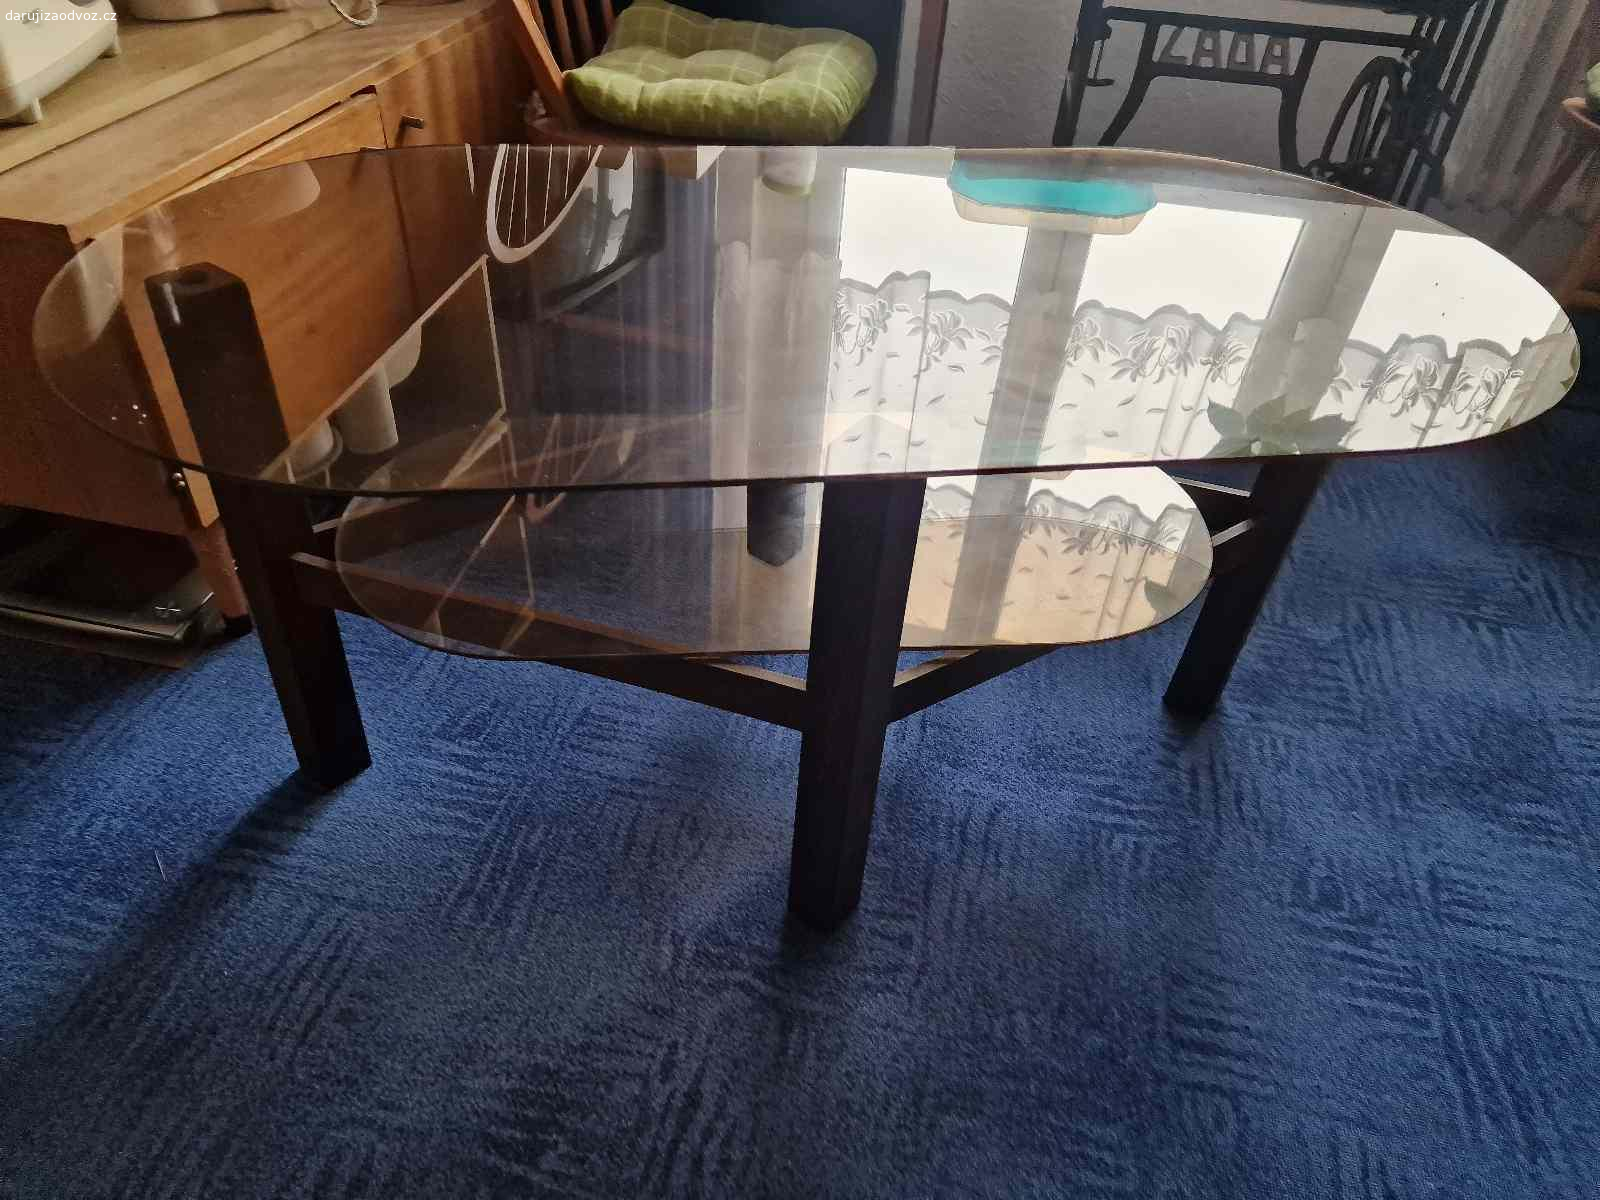 Daruji skleněný konferenční stolek. Daruji skleněný konferenční stolek, dřevěné nohy, skleněná horni a spodní deska.